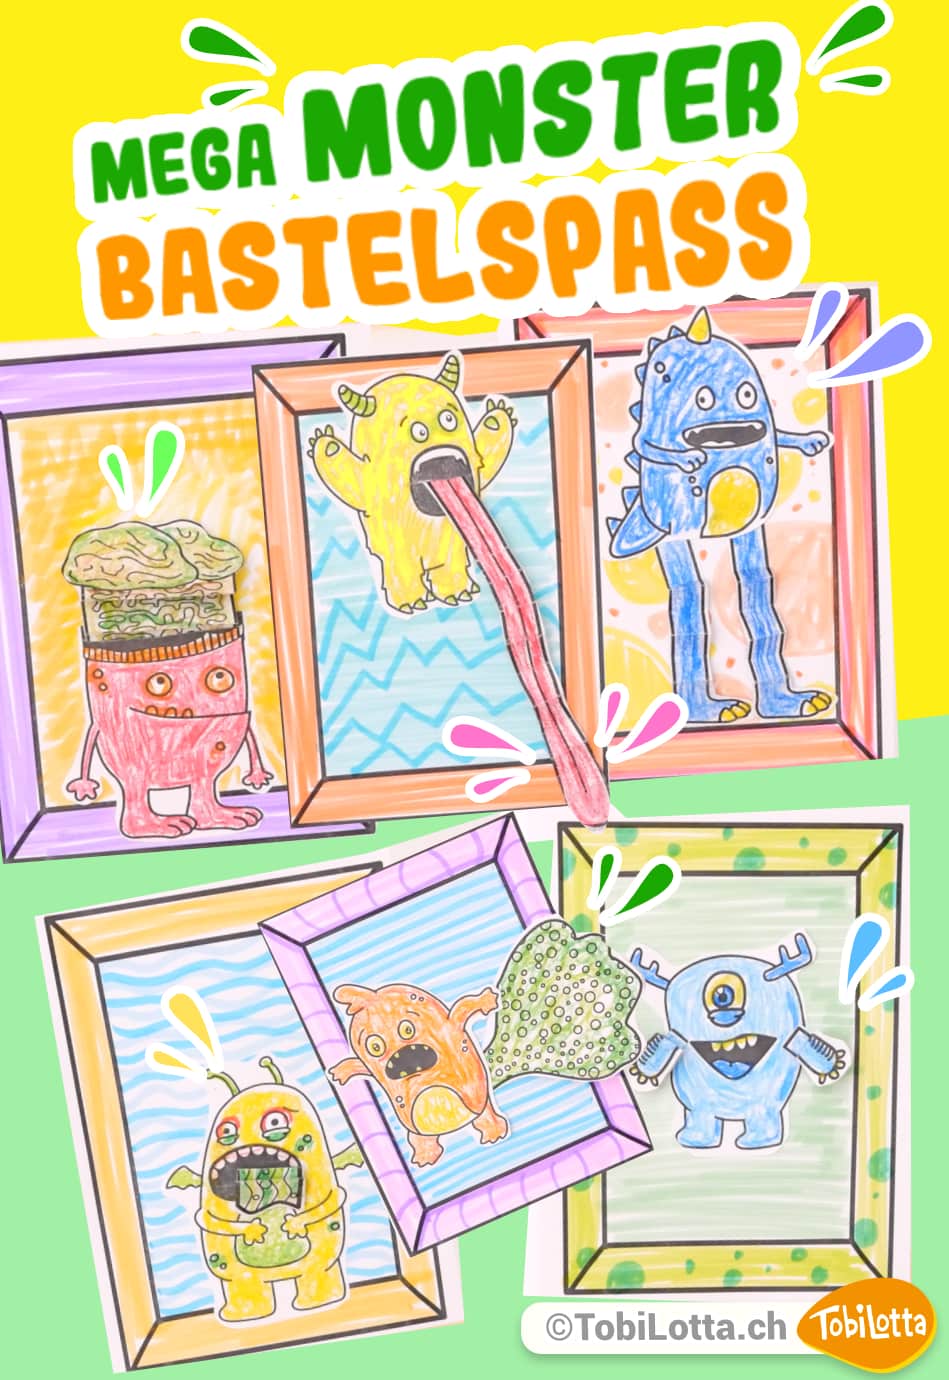 Monster Bastelvorlage Monster basteln mit Kindern pdf vorlagen zum ausdrucken für das basteln mit kindern monster ag